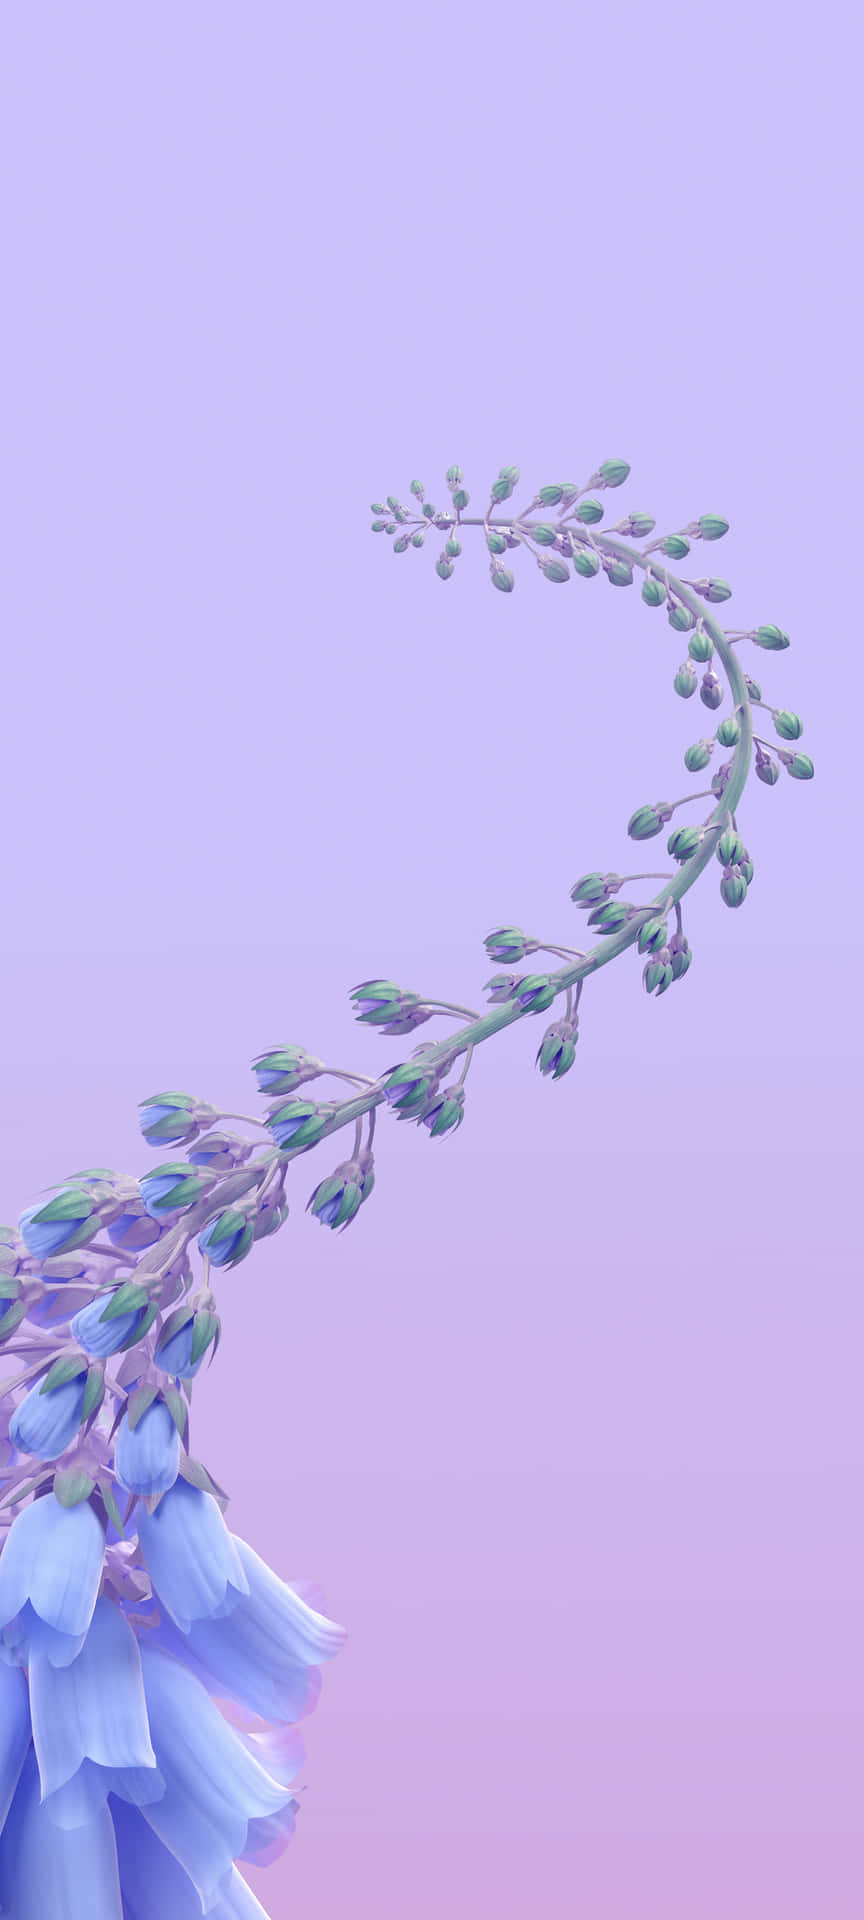 Enblå Blomma Med Lila Löv I Bakgrunden Wallpaper